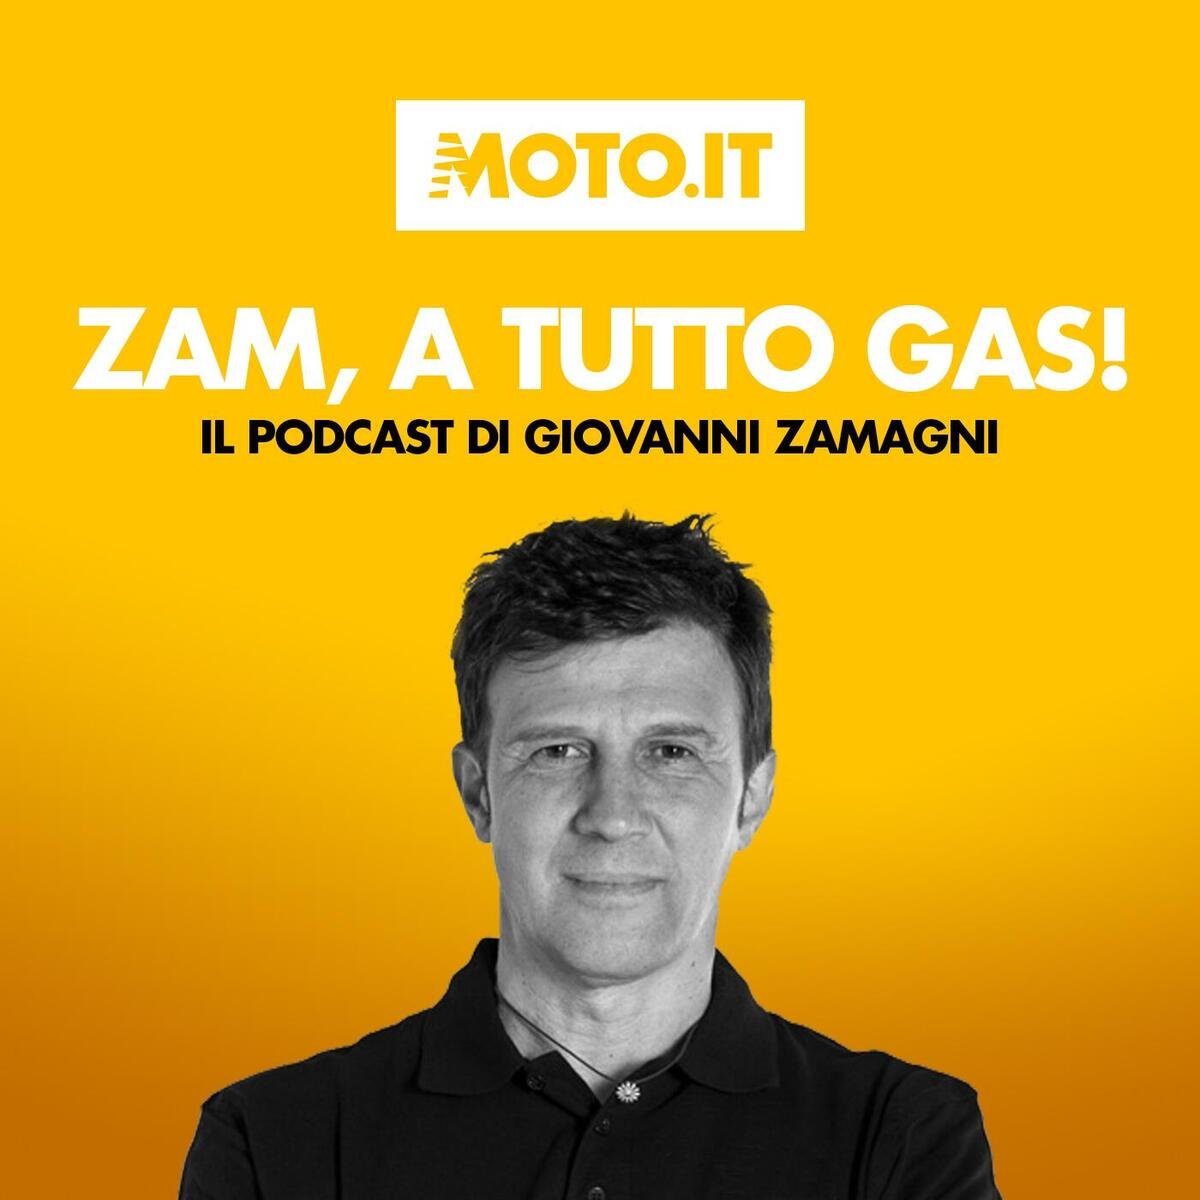 zam-a-tutto-gas-#100-il-motociclismo-da-agostini-a-bagnaia-una-puntata-speciale-[podcast]-–-sport-–-moto.it